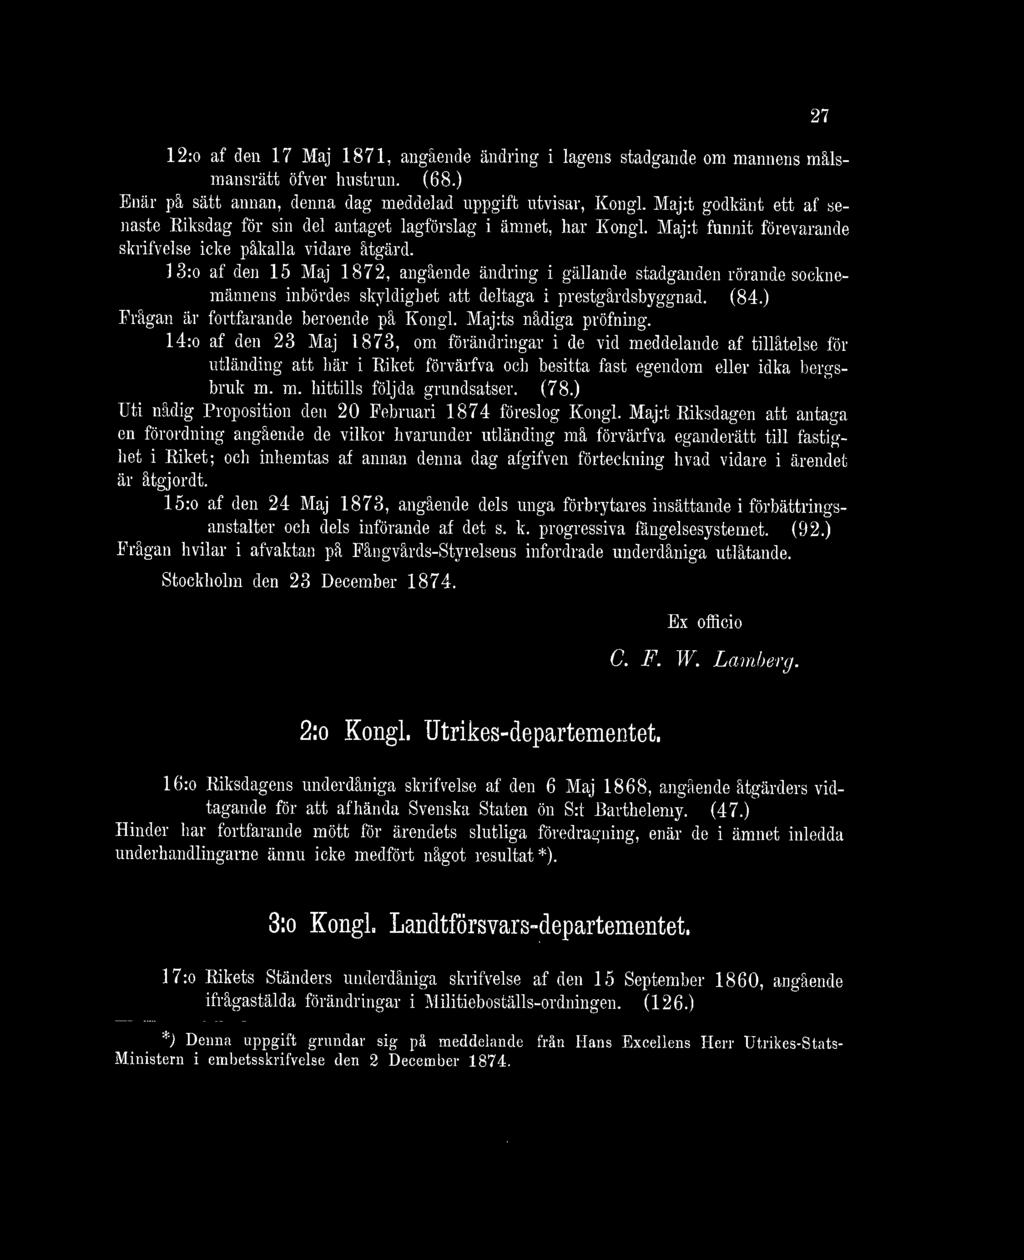 13:o af den 15 Maj 1872, angående ändring i gällande stadganden rörande socknemännens inbördes skyldighet att deltaga i prestgårdsbyggnad. (84.) Frågan är fortfarande beroende på Kongl.